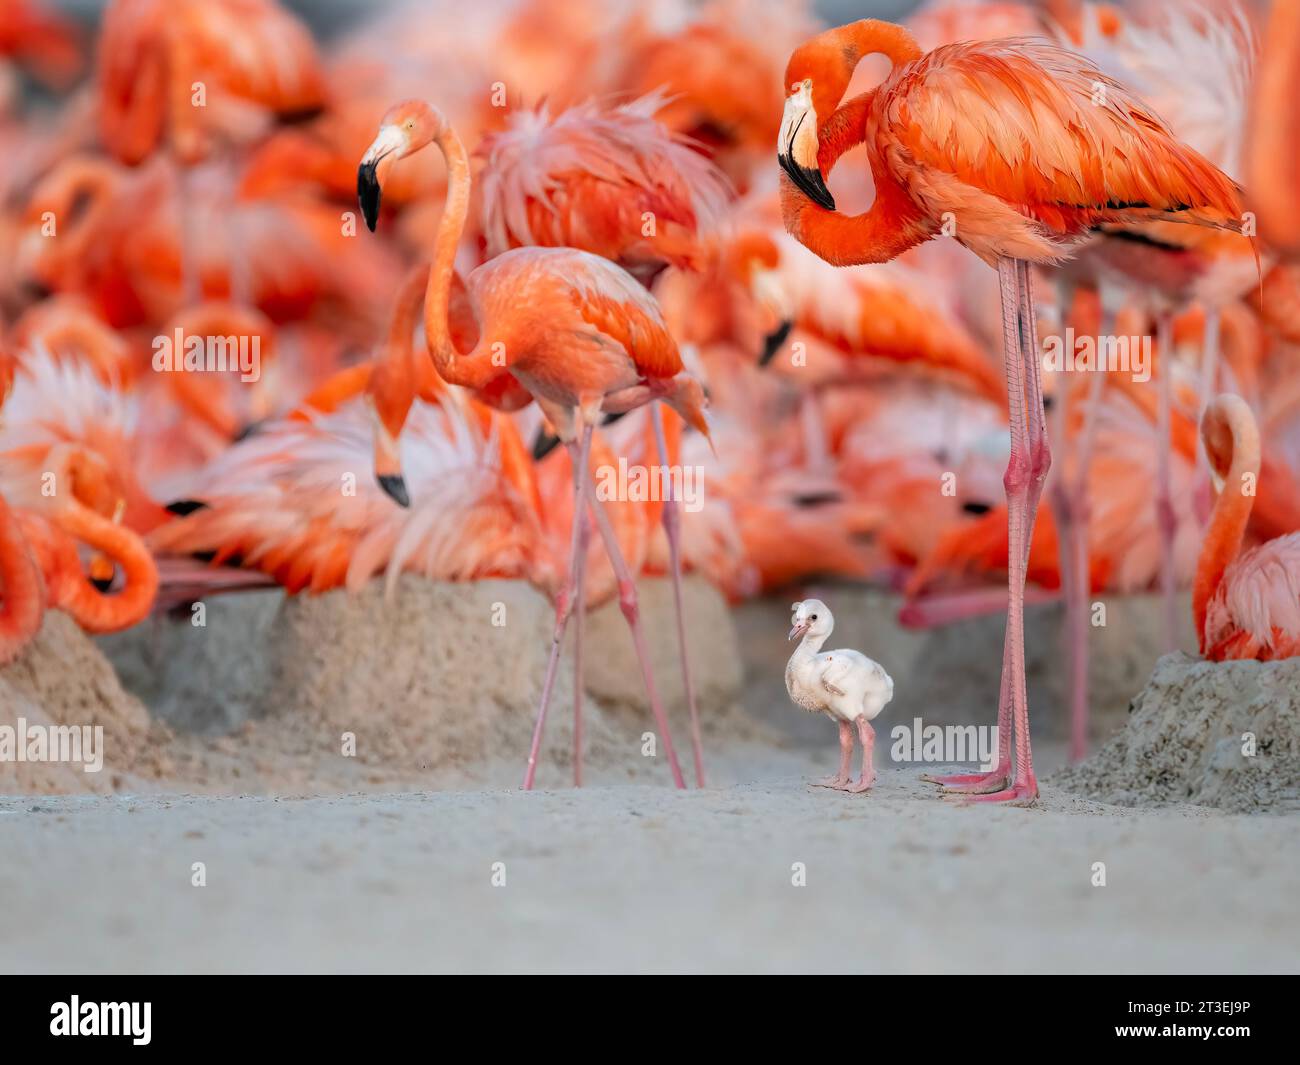 Baby flamingo in piedi accanto al suo genitore MESSICO Un ADORABILE chicklet di fenicottero caraibico può essere visto cercando di imitare gli adulti in questi adorabili pict Foto Stock